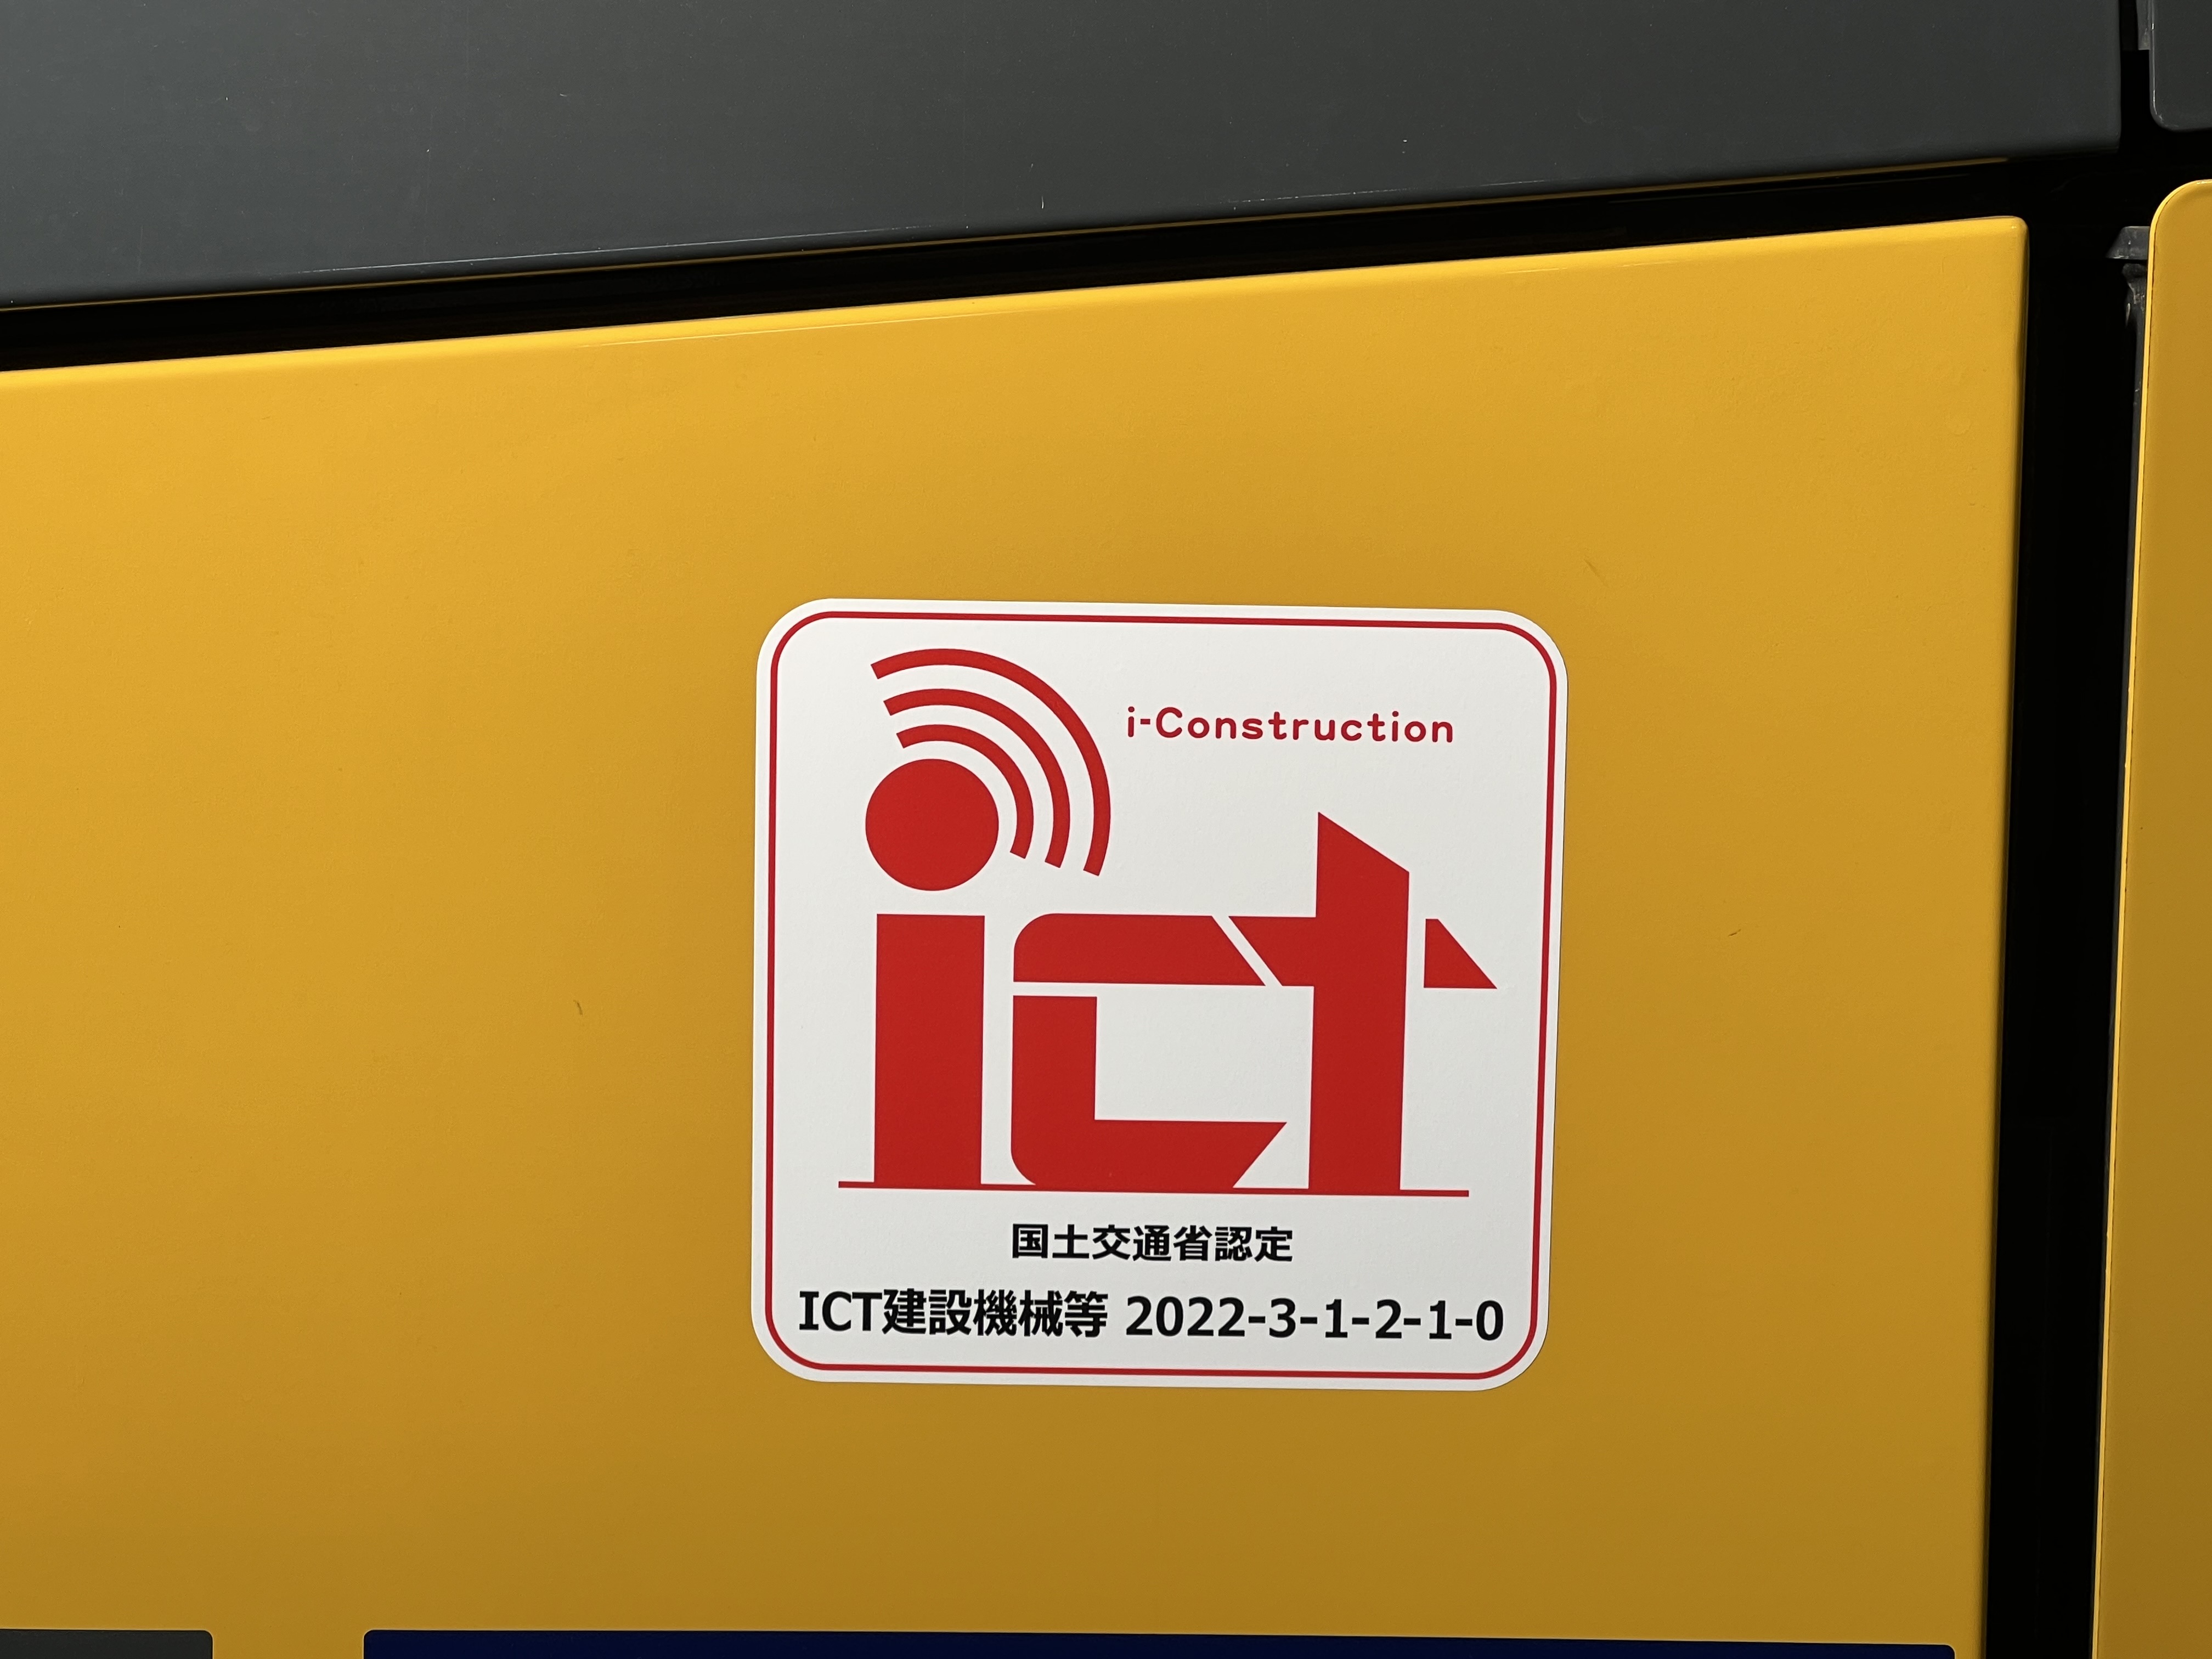 国土交通省ICT建設機械等認定初回認定に選ばれました イメージ3